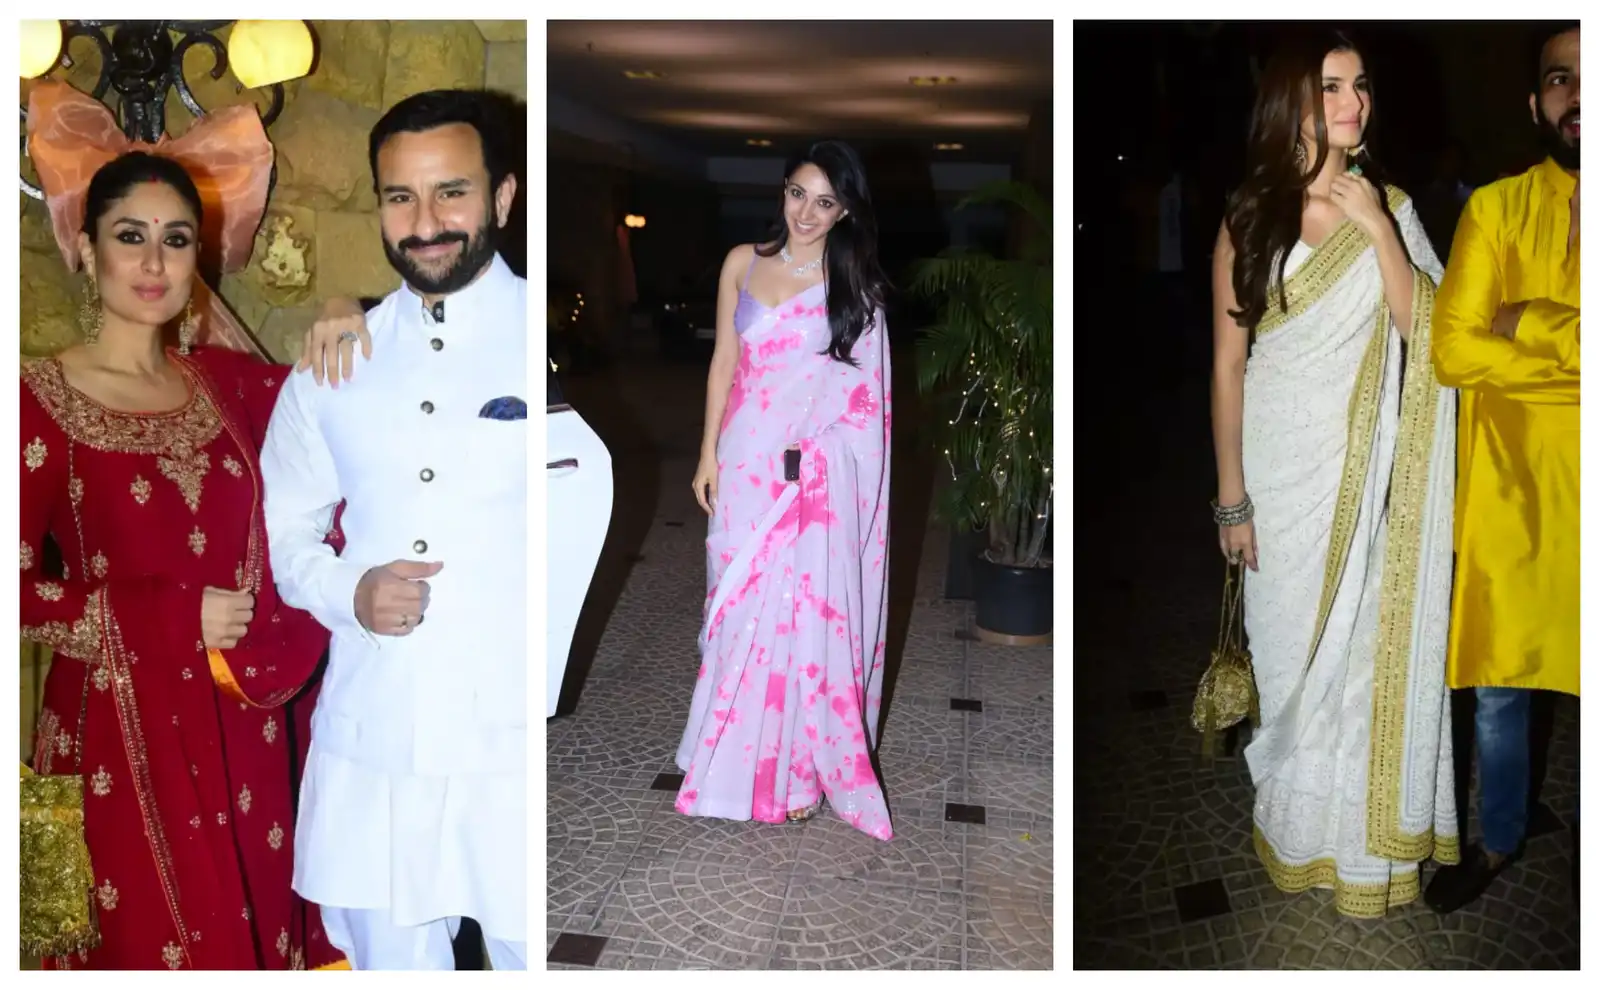 Saif-Kareena, Kiara Advani, Tara Sutaria And Others Join Armaan Jain's Roka Ceremony With Anissa Malhotra